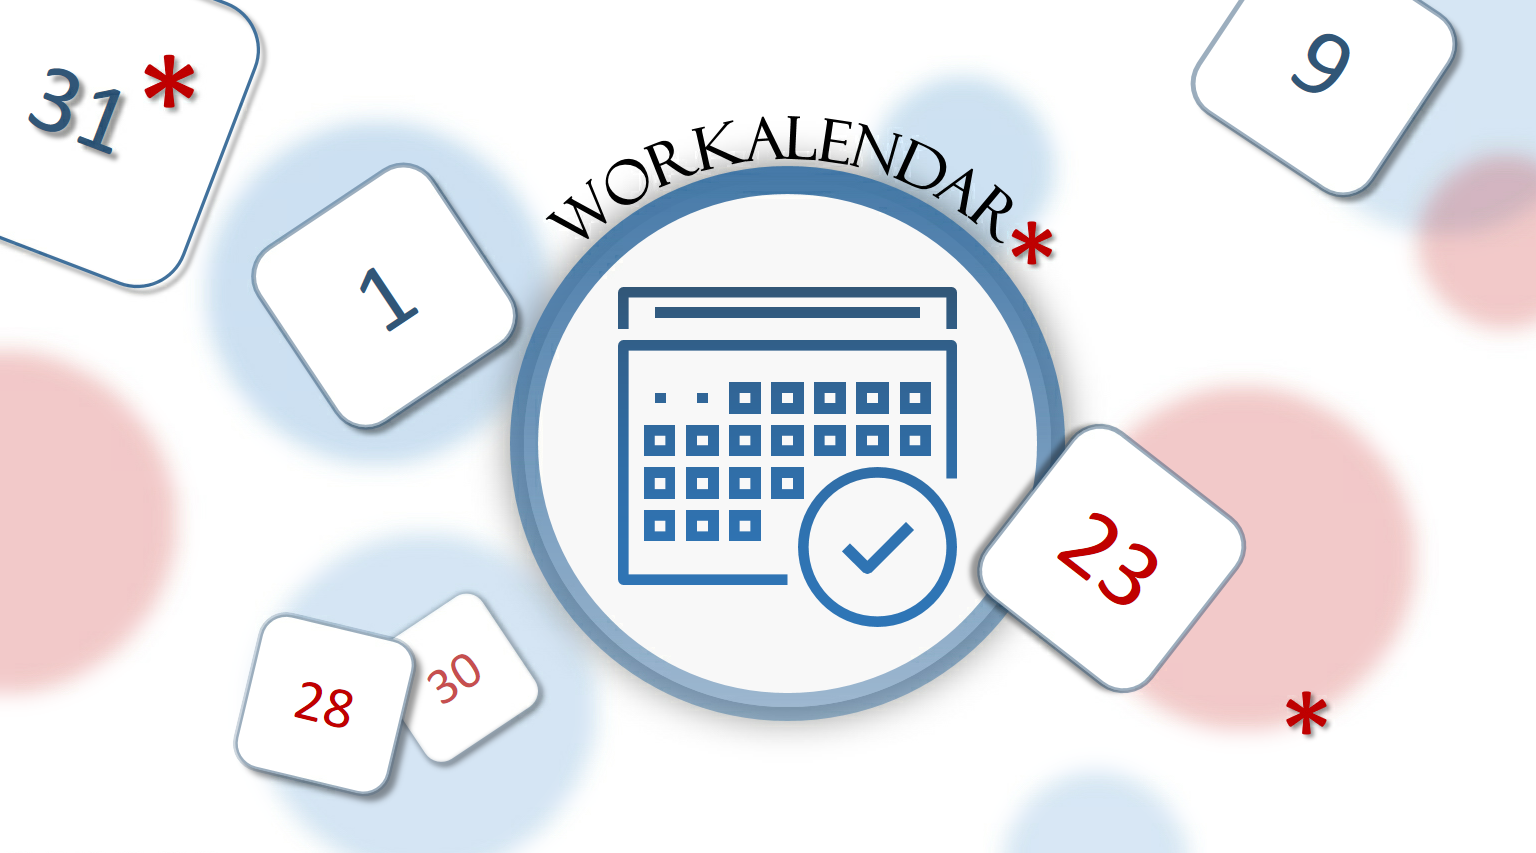 Я календарь переверну: использование Workalendar для определения  календарных дней / Хабр